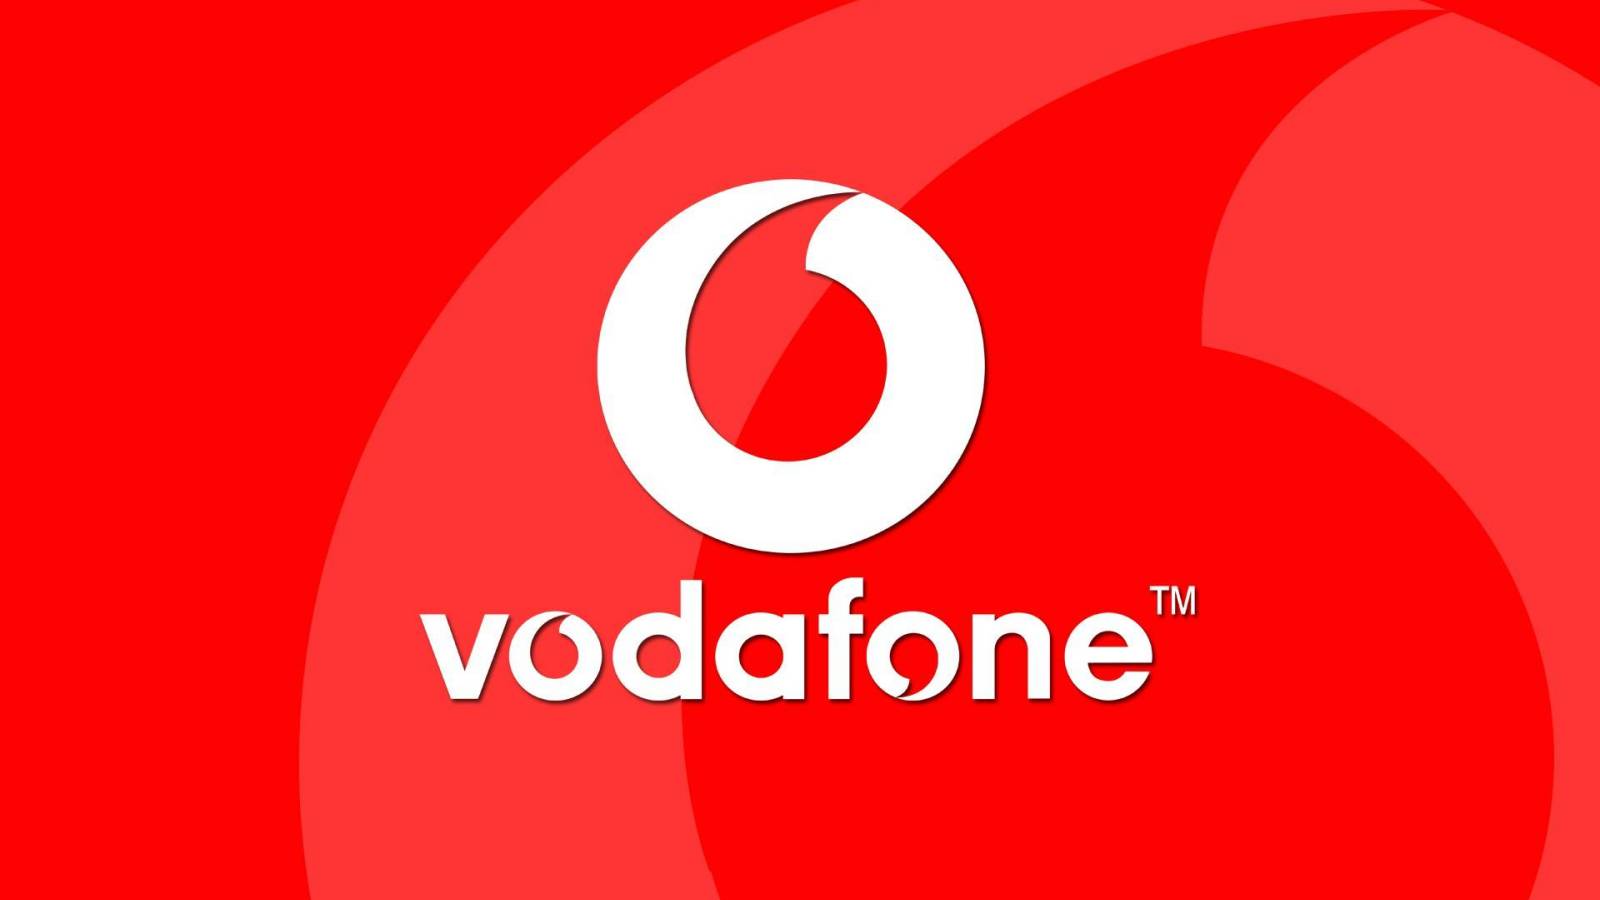 Vodafone der Superlative